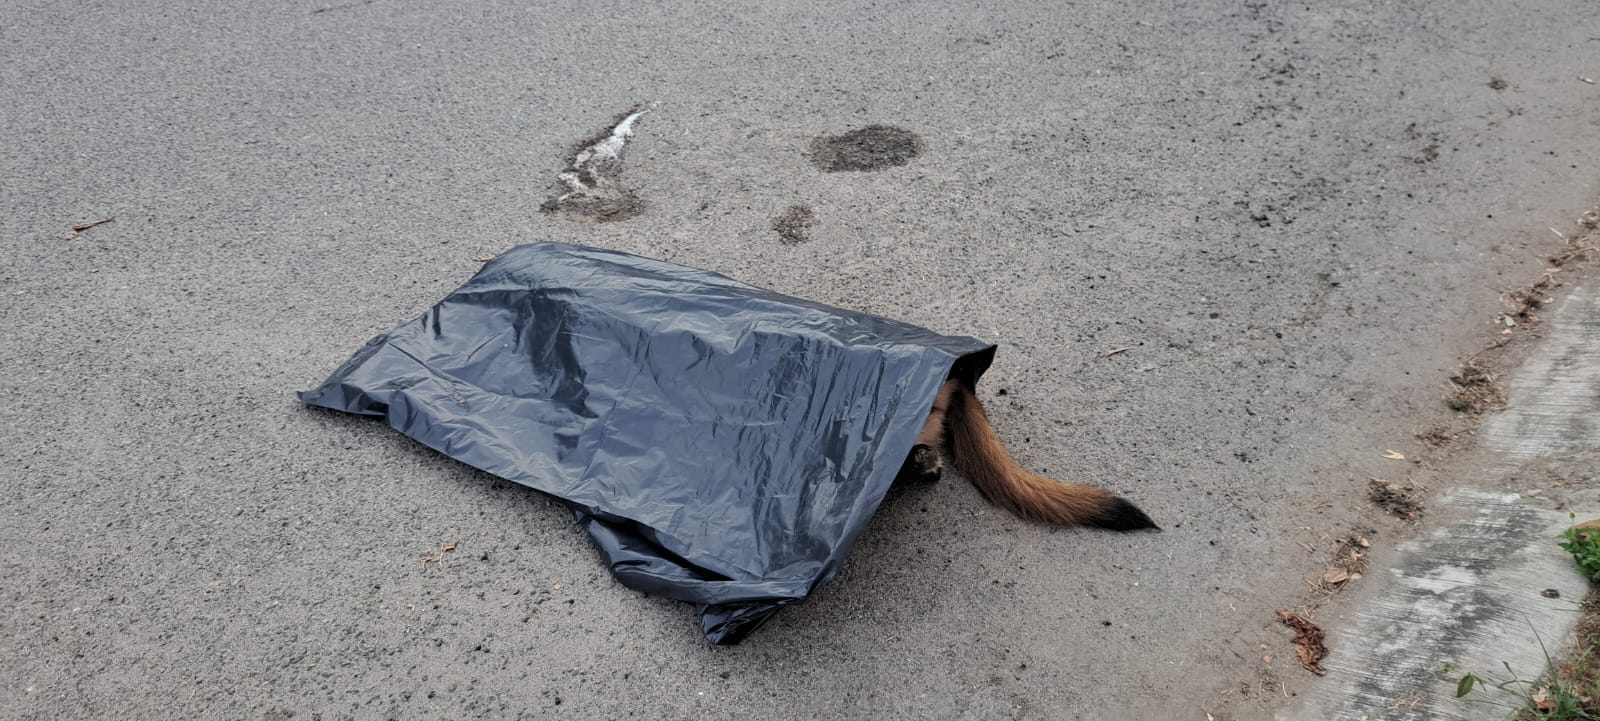 6 mascotas fueron envenenadas en el fraccionamiento Nuevo Ixtapa